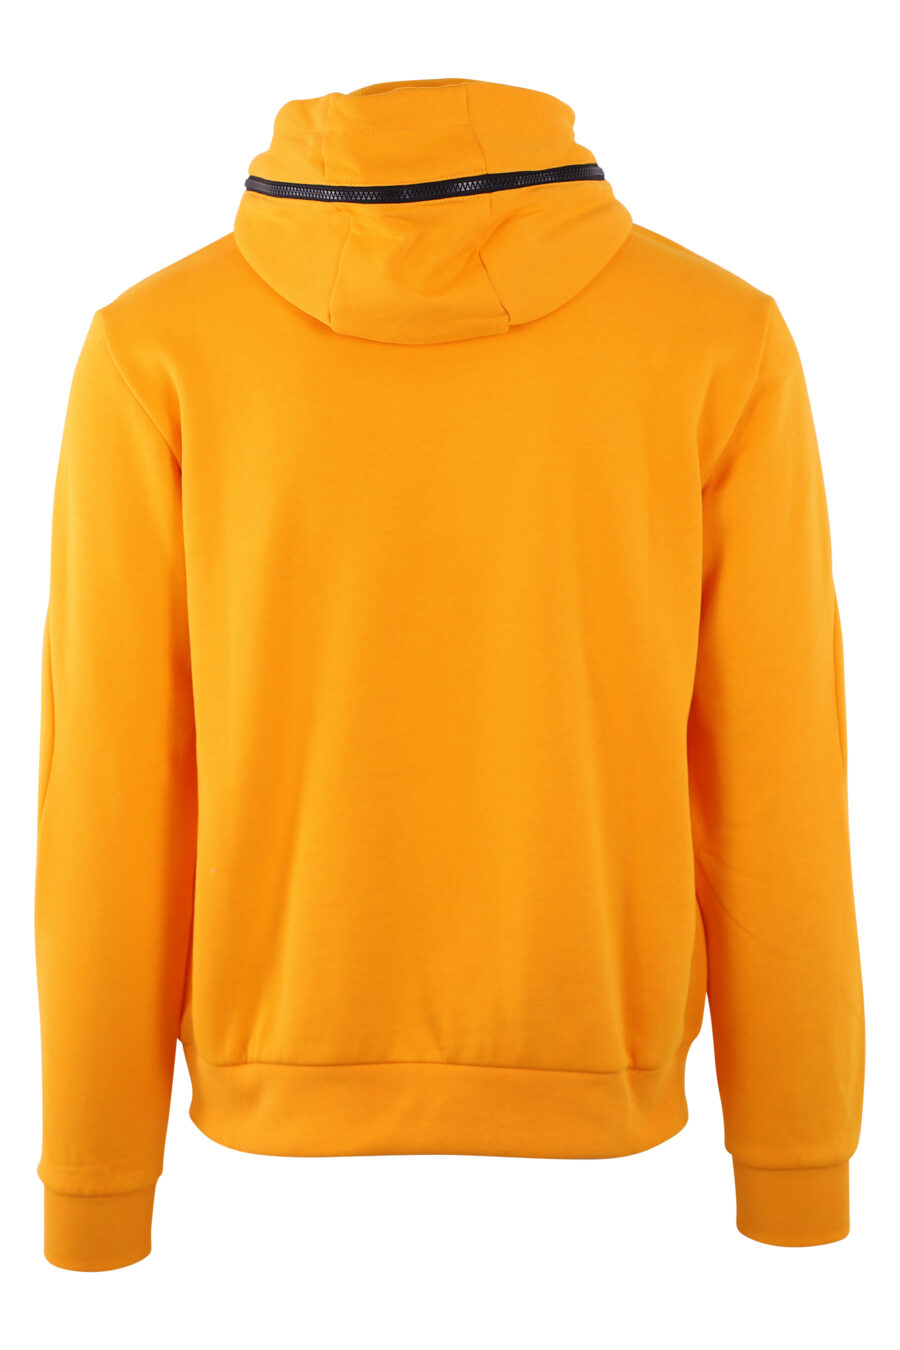 Yellow hooded sweatshirt with "lux identity" monogram - IMG 2856 1